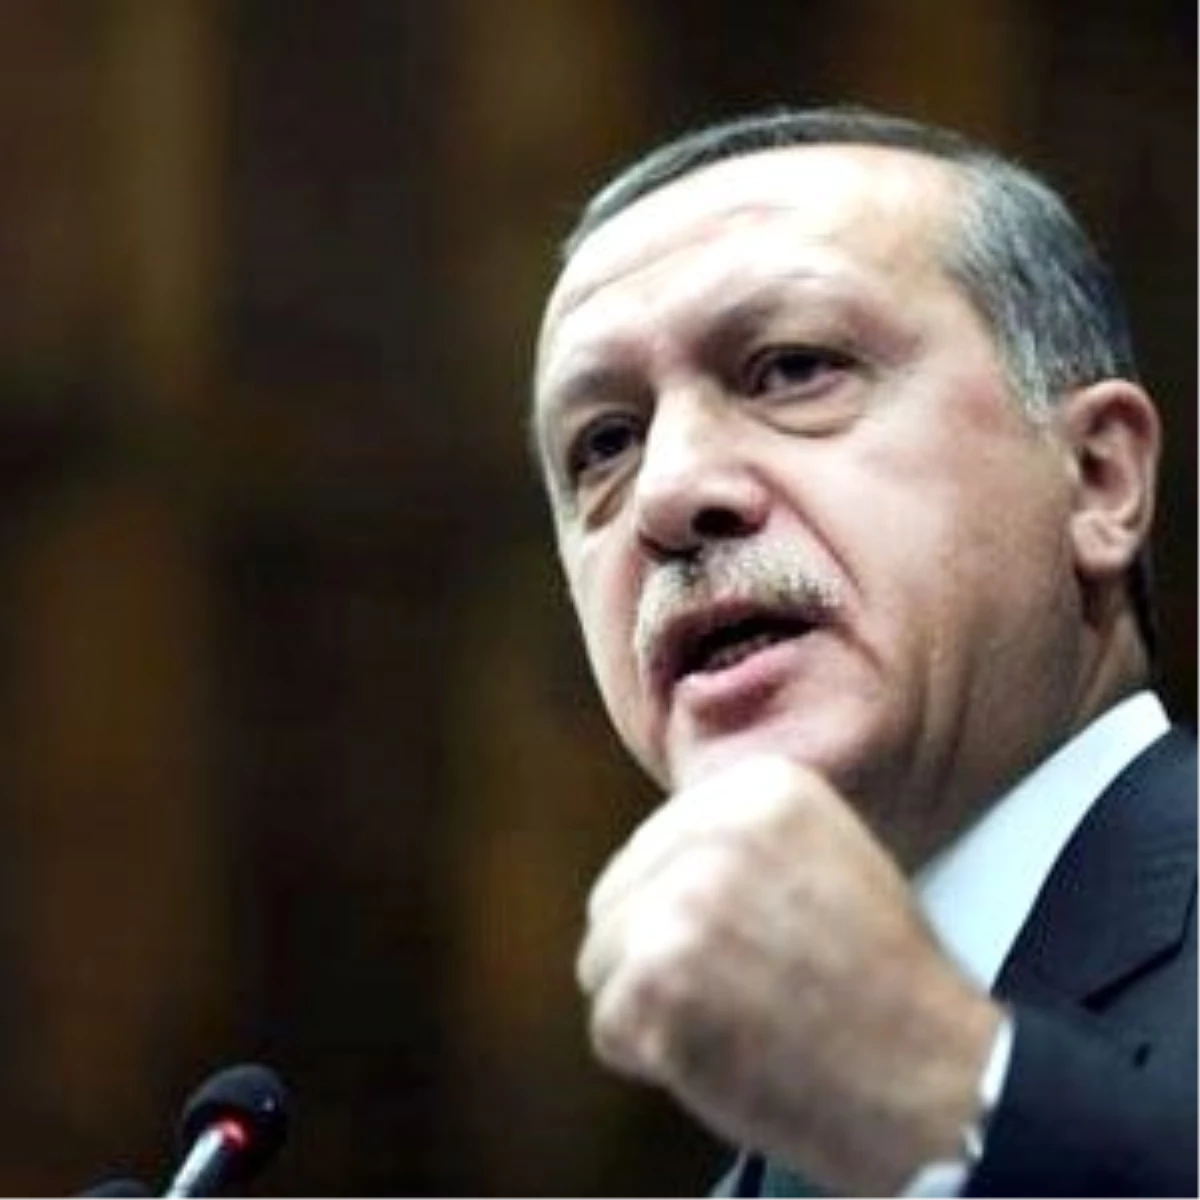 Başbakan Erdoğan: "Byegm Dünyaya Açılan Pencere"